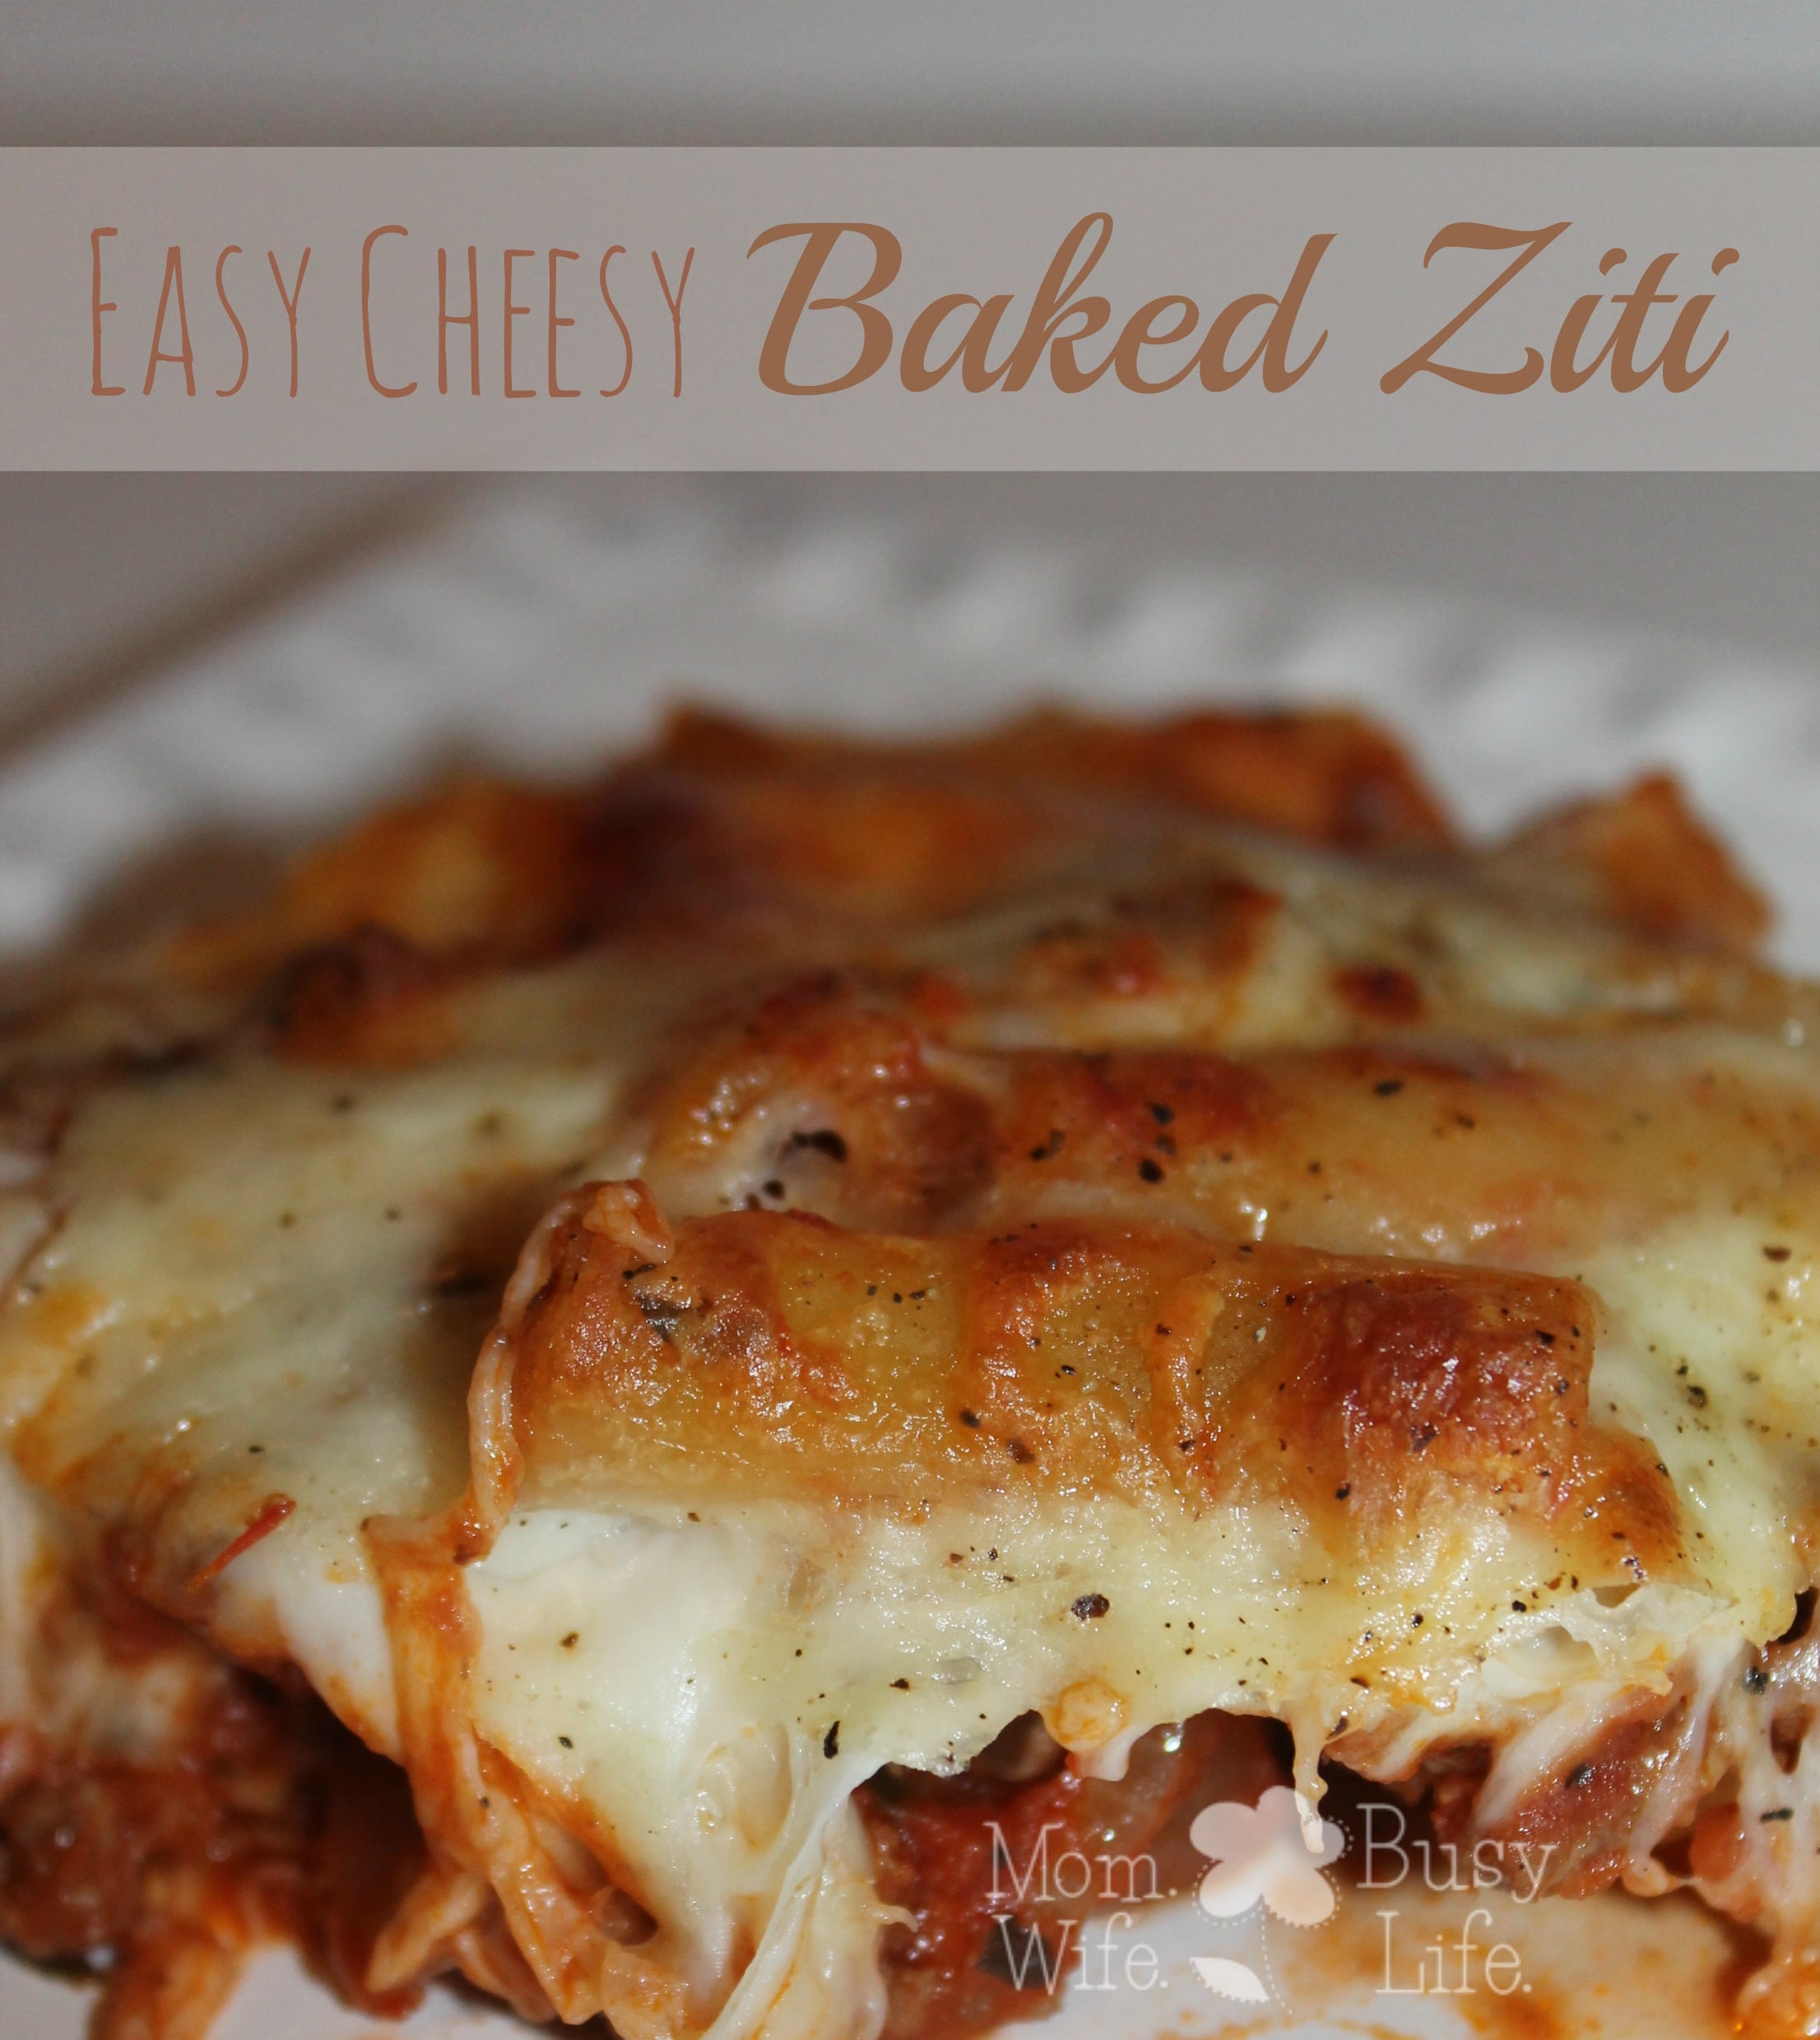 Easy Cheesy Baked Ziti Recipe - Mom. Wife. Busy Life.